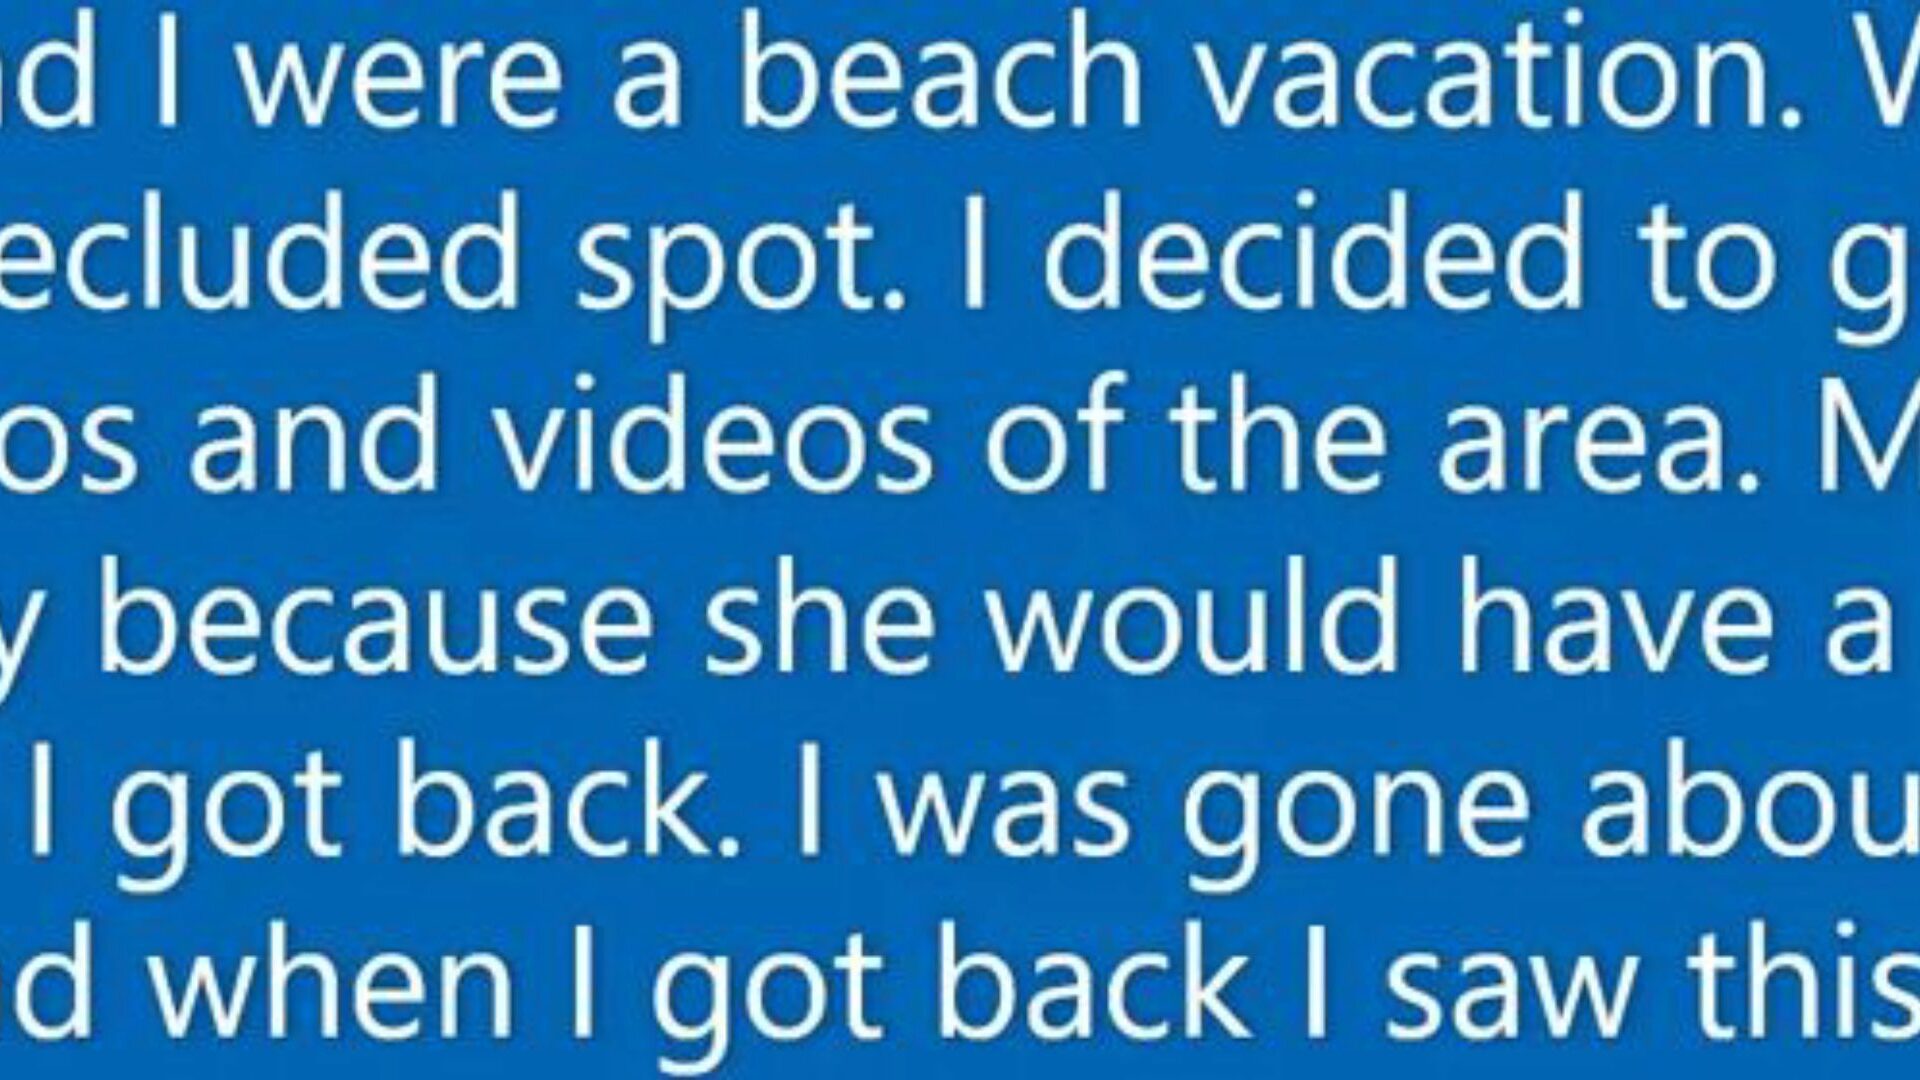 felesége belélegzi az idegen botot a tengerparti nyaraláskor